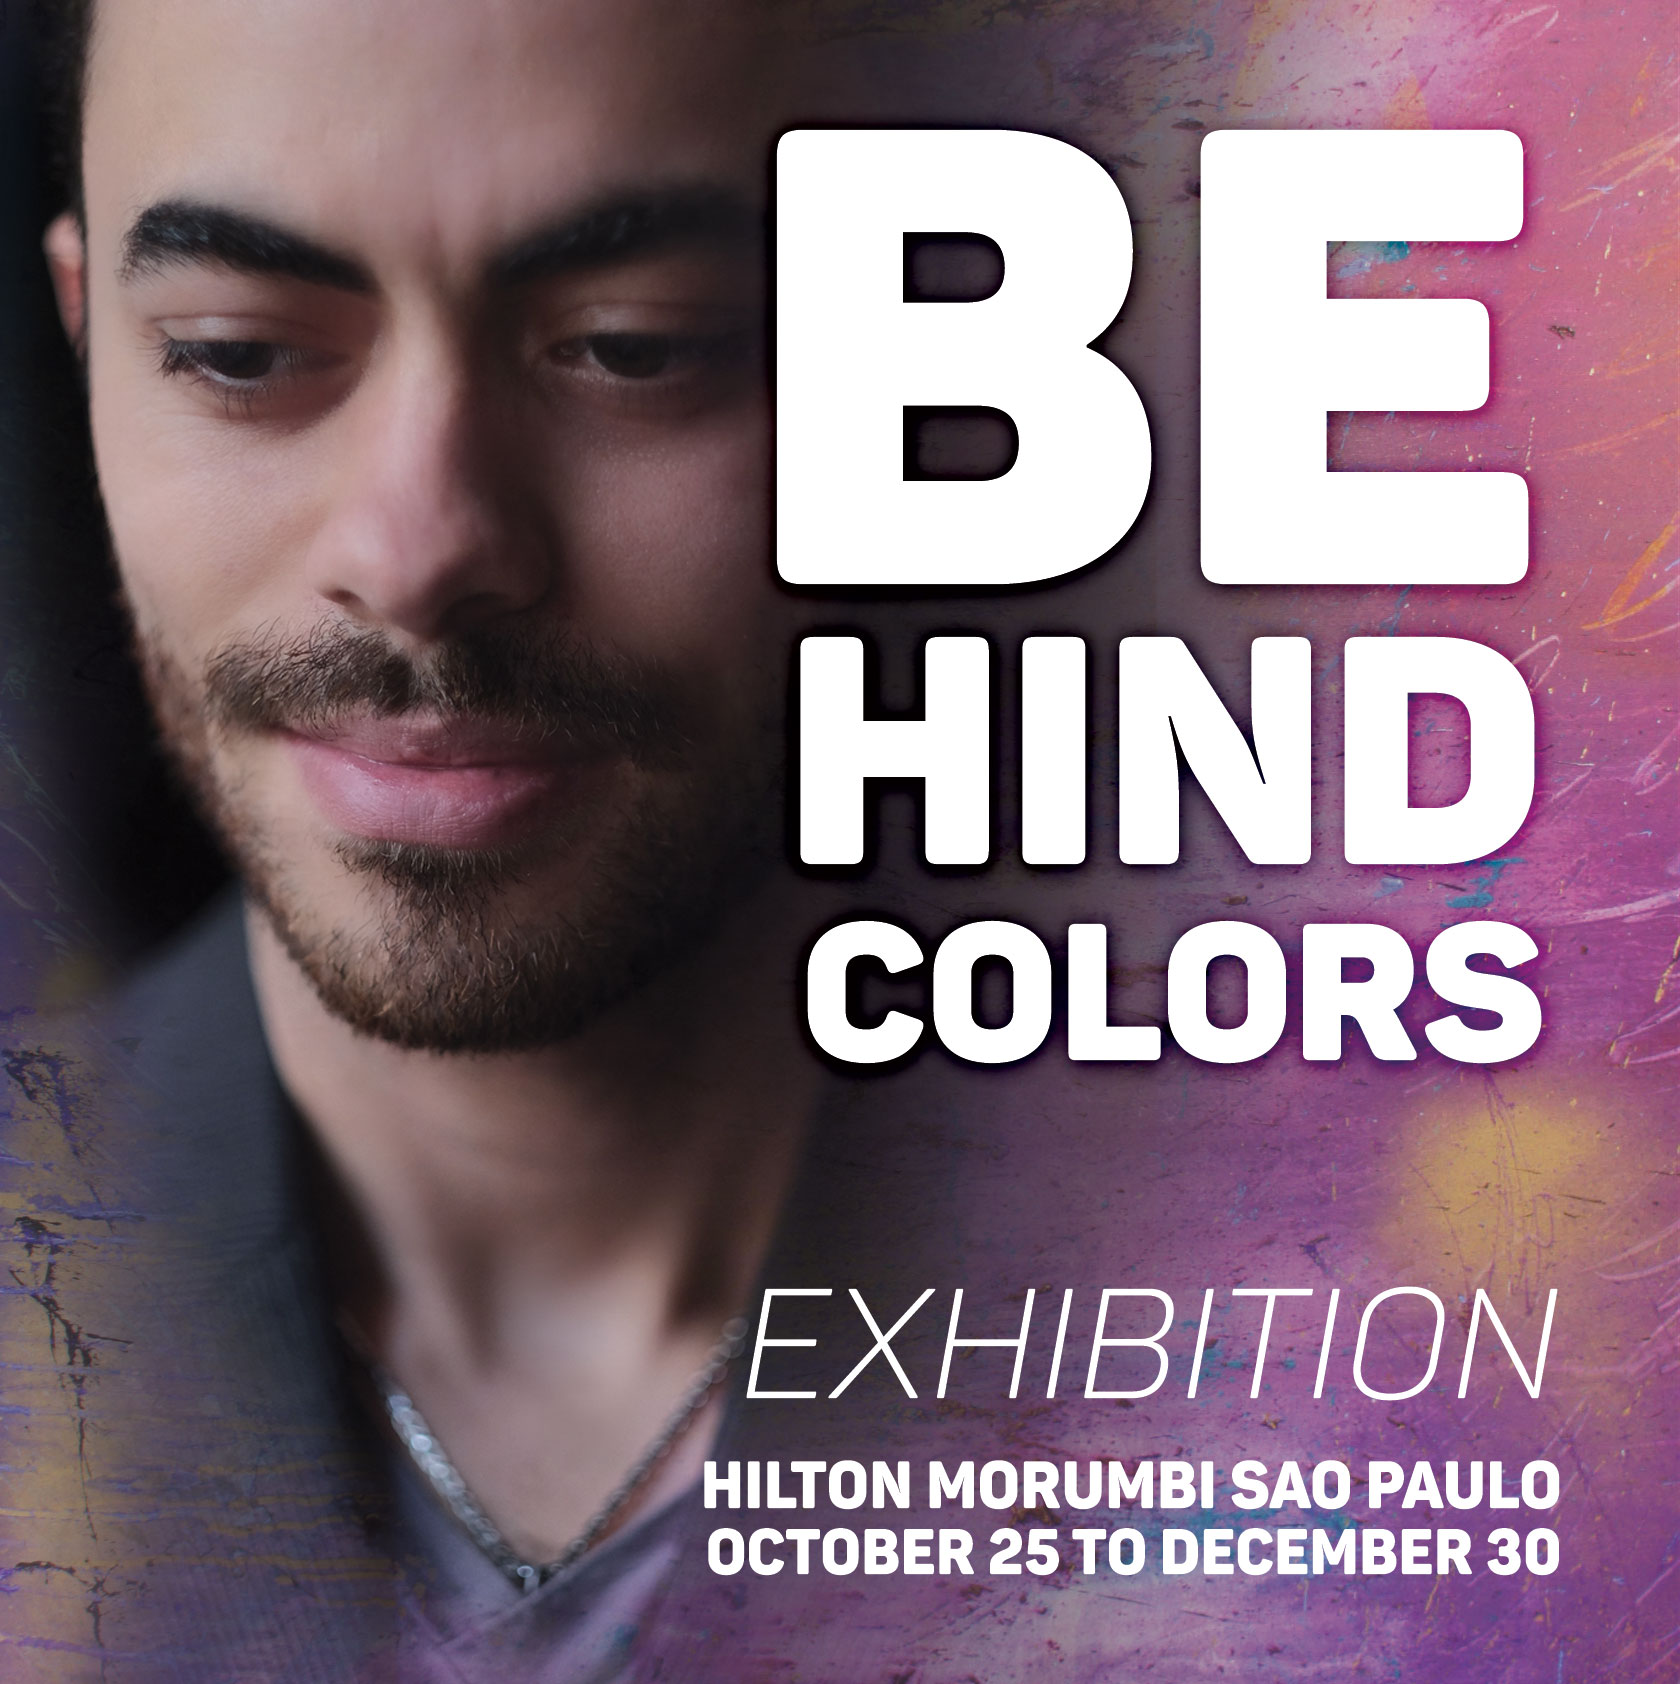 AGENDA: exposição gratuita "Behind Colors" também ajuda instituições